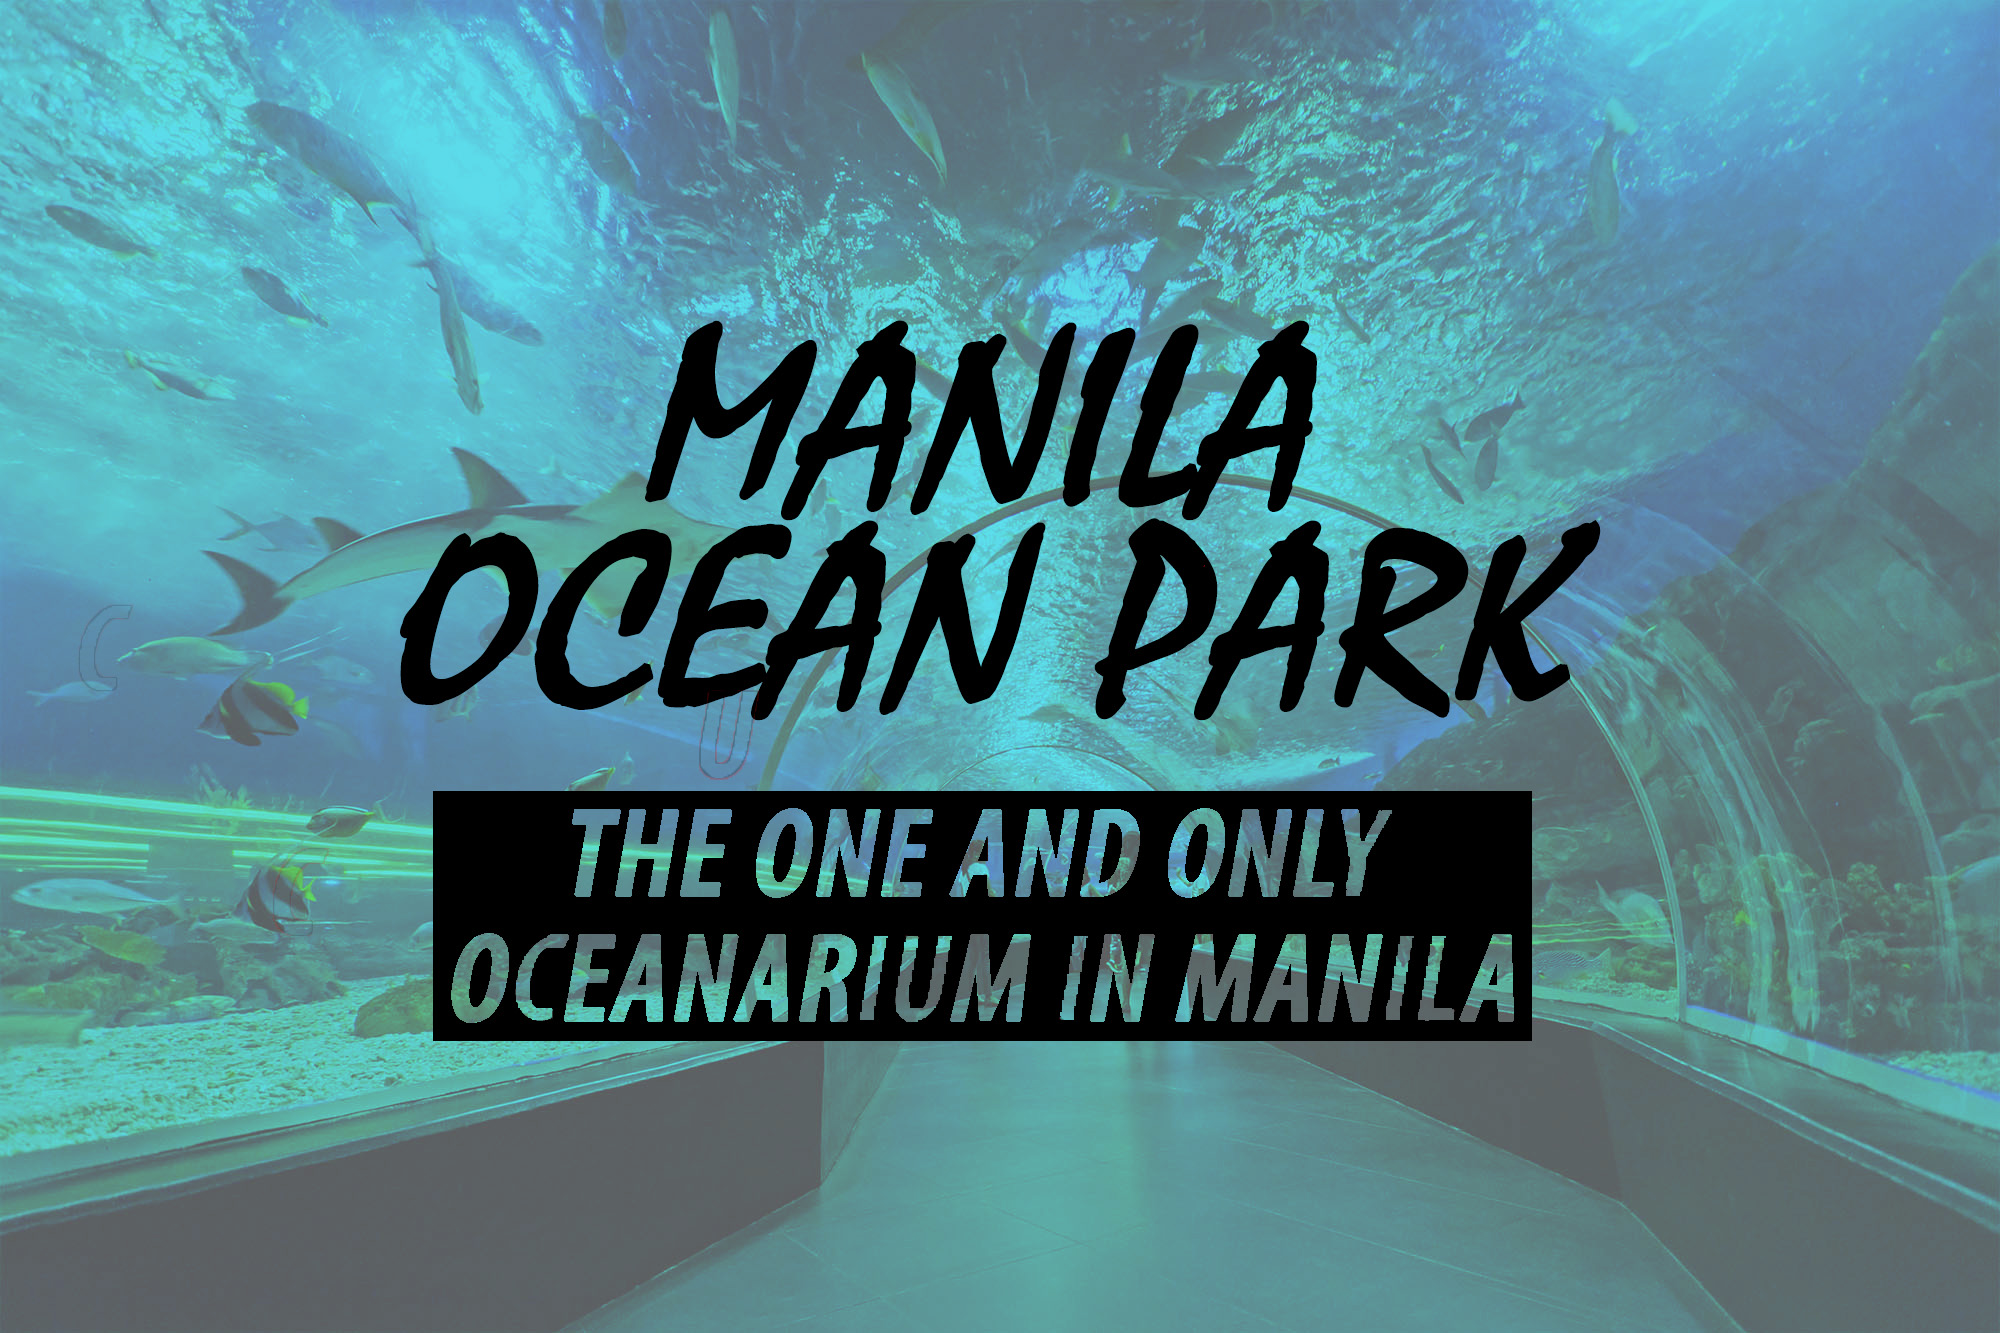 Manila ocean park manila philippines aquarium oceanarium marine